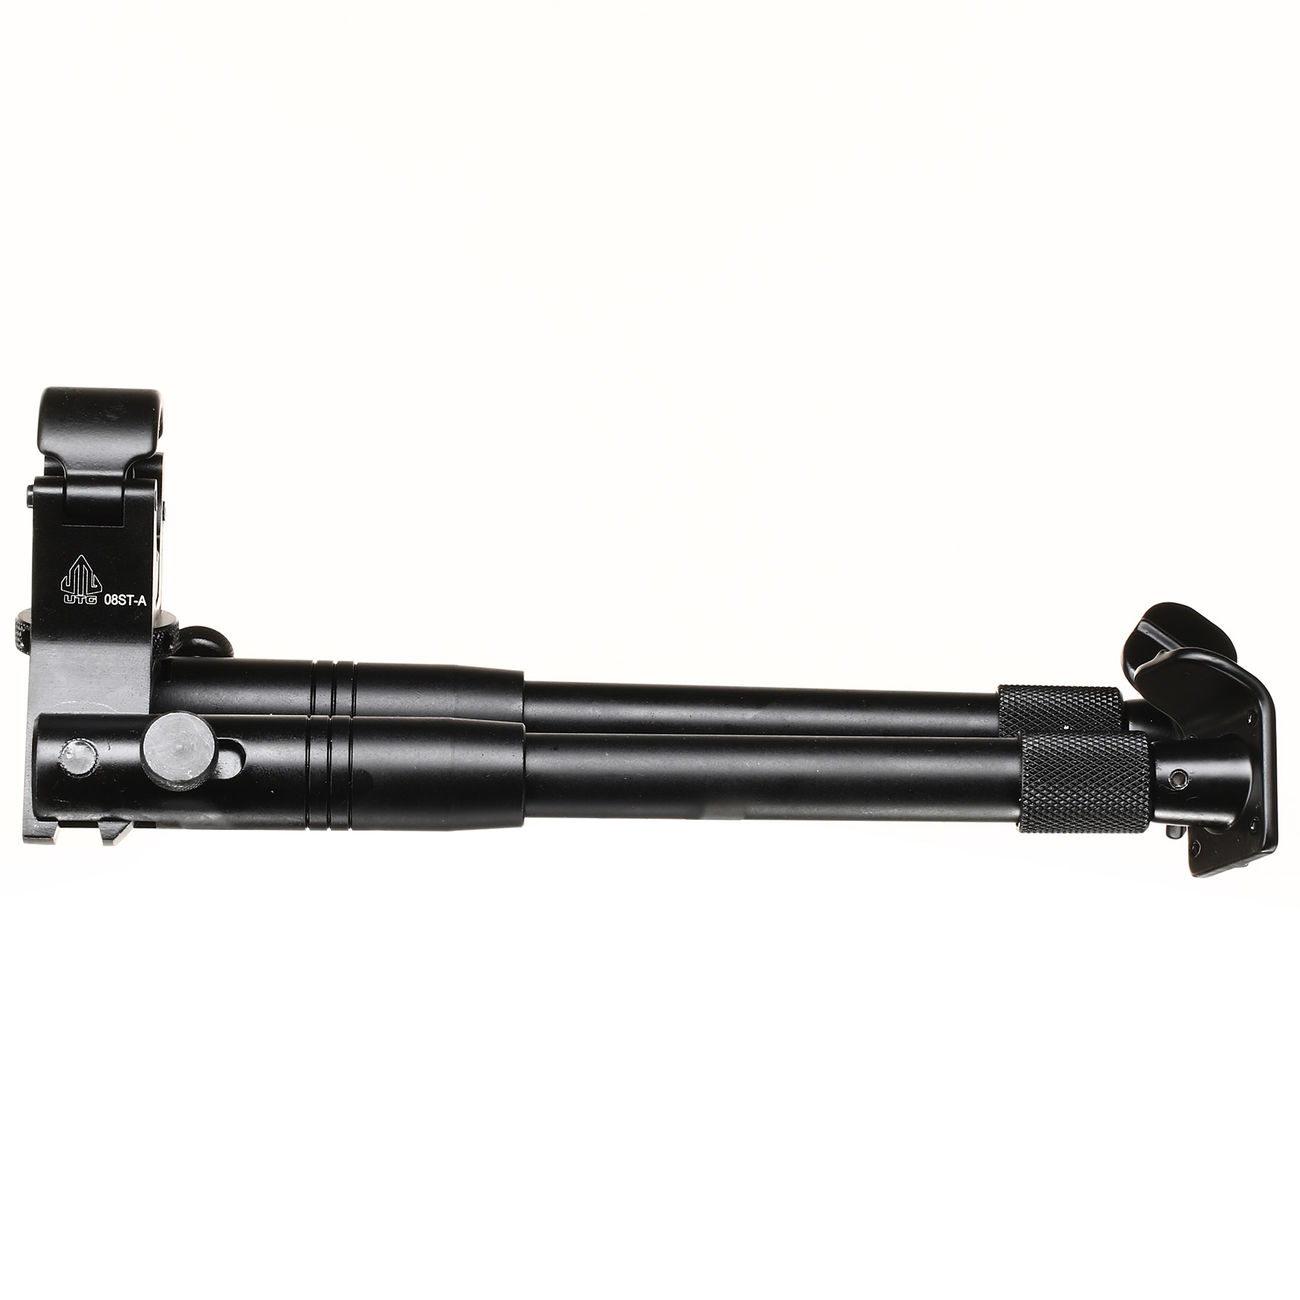 UTG Tactical Clamp-On Bipod Metall Zweibein - Metallfüße 190 - 250mm schwarz Bild 1